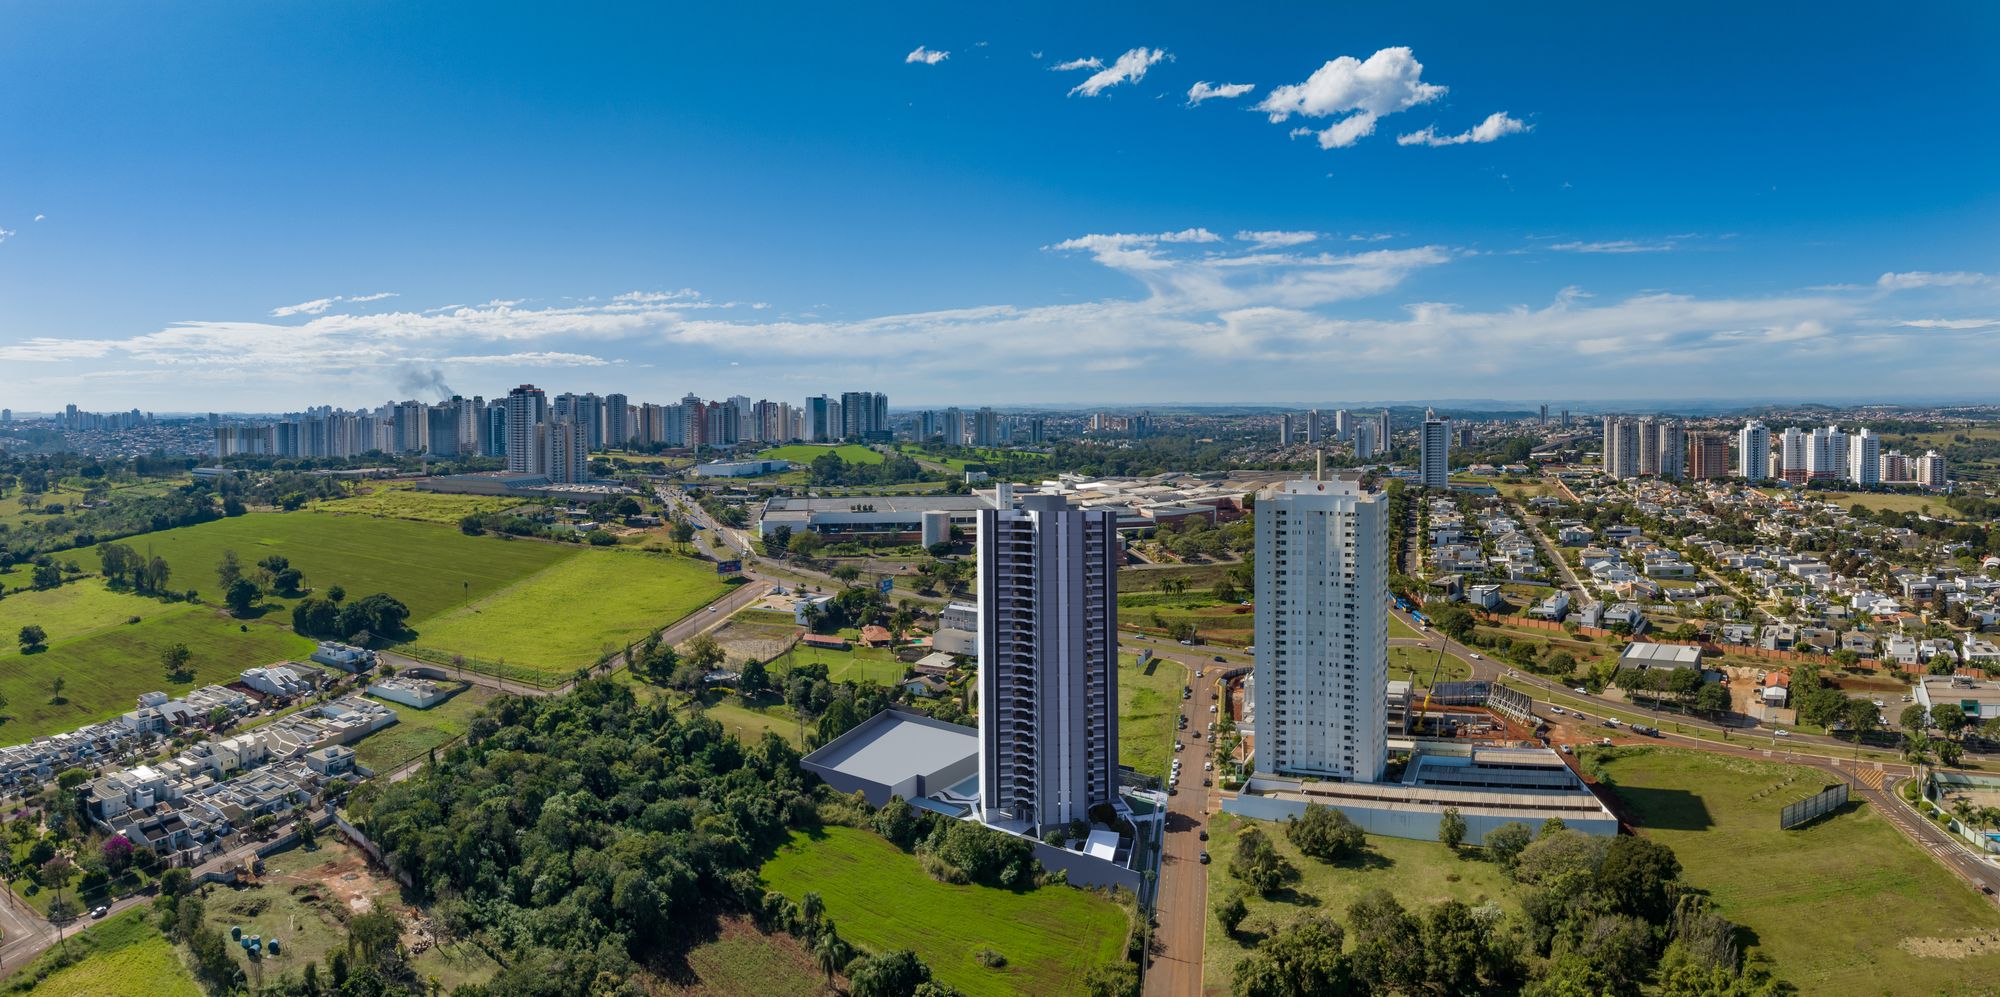 Com "delivery room", "e-zone" e tecnologia de ponta, empreendimento marca nova era no mercado imobiliário de Londrina (PR)